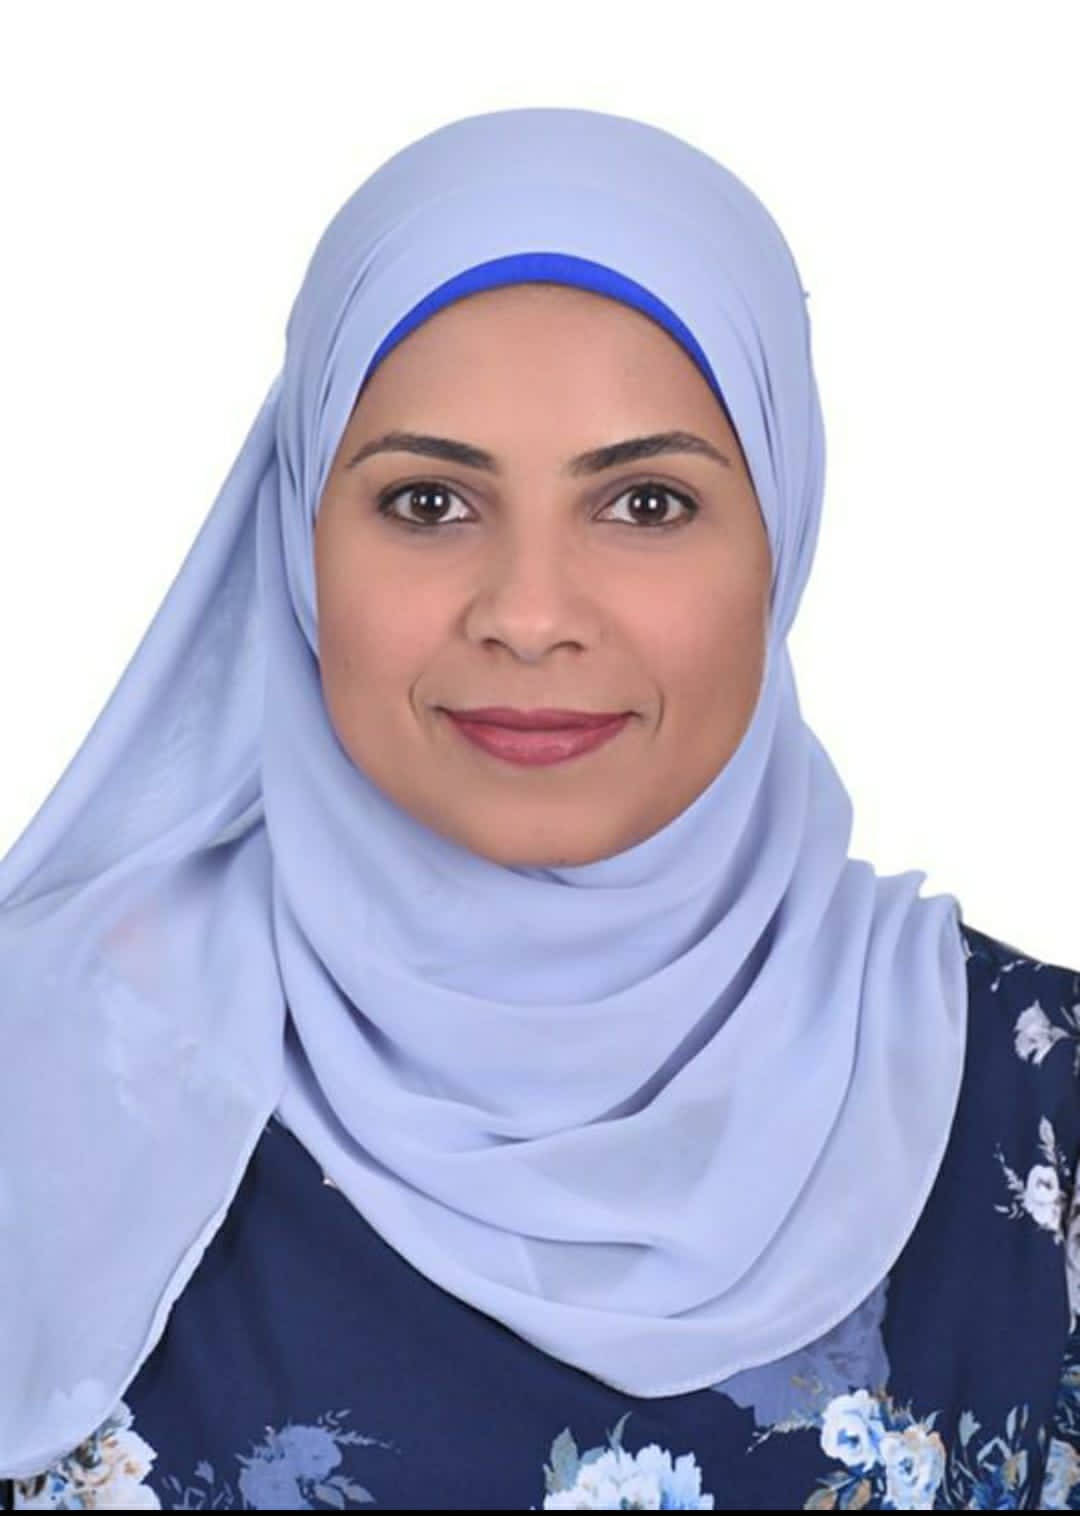 Dr. El-Zahra Hussein